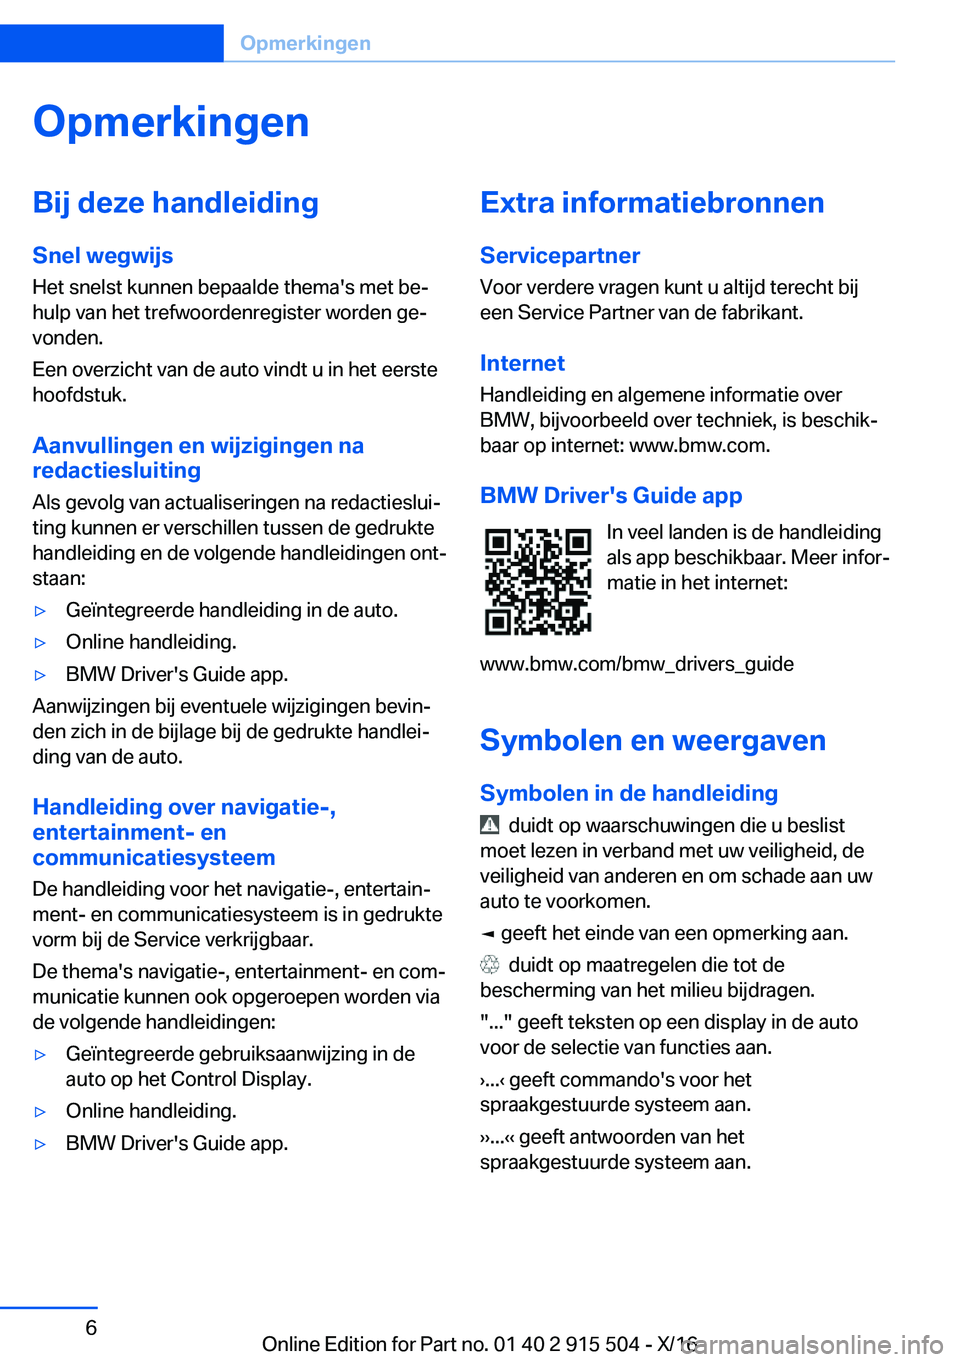 BMW X5 2017  Instructieboekjes (in Dutch) �O�p�m�e�r�k�i�n�g�e�n�B�i�j��d�e�z�e��h�a�n�d�l�e�i�d�i�n�g�S�n�e�l��w�e�g�w�i�j�s
�H�e�t� �s�n�e�l�s�t� �k�u�n�n�e�n� �b�e�p�a�a�l�d�e� �t�h�e�m�a�'�s� �m�e�t� �b�ej
�h�u�l�p� �v�a�n� �h�e�t